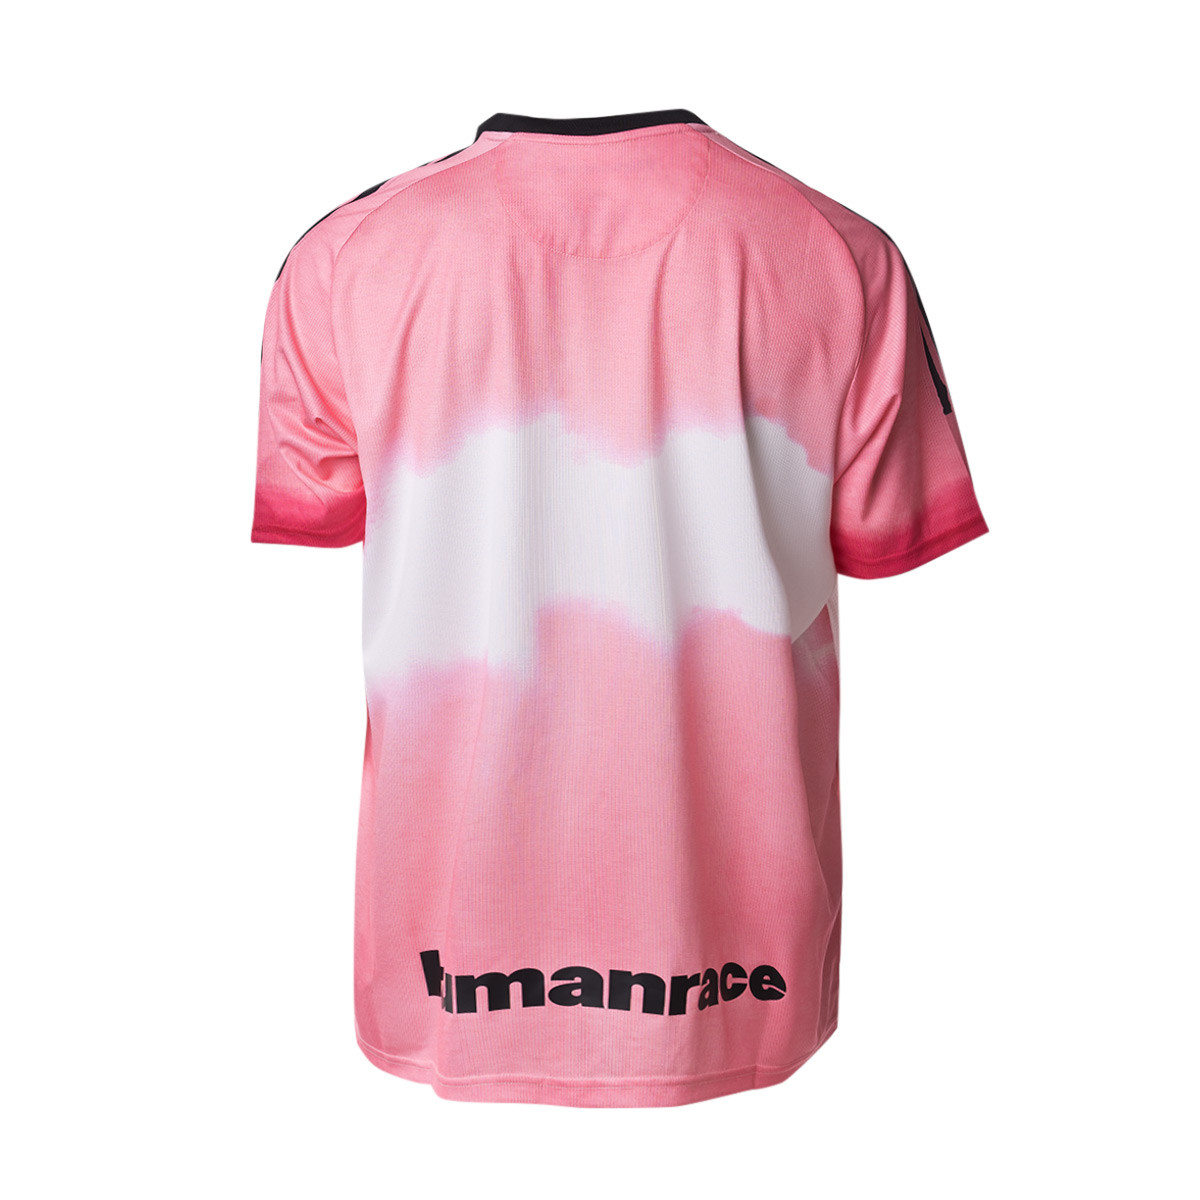 Jersey Adidas Juventus Human Race 2020 2021 Glow Pink Black Futbol Emotion